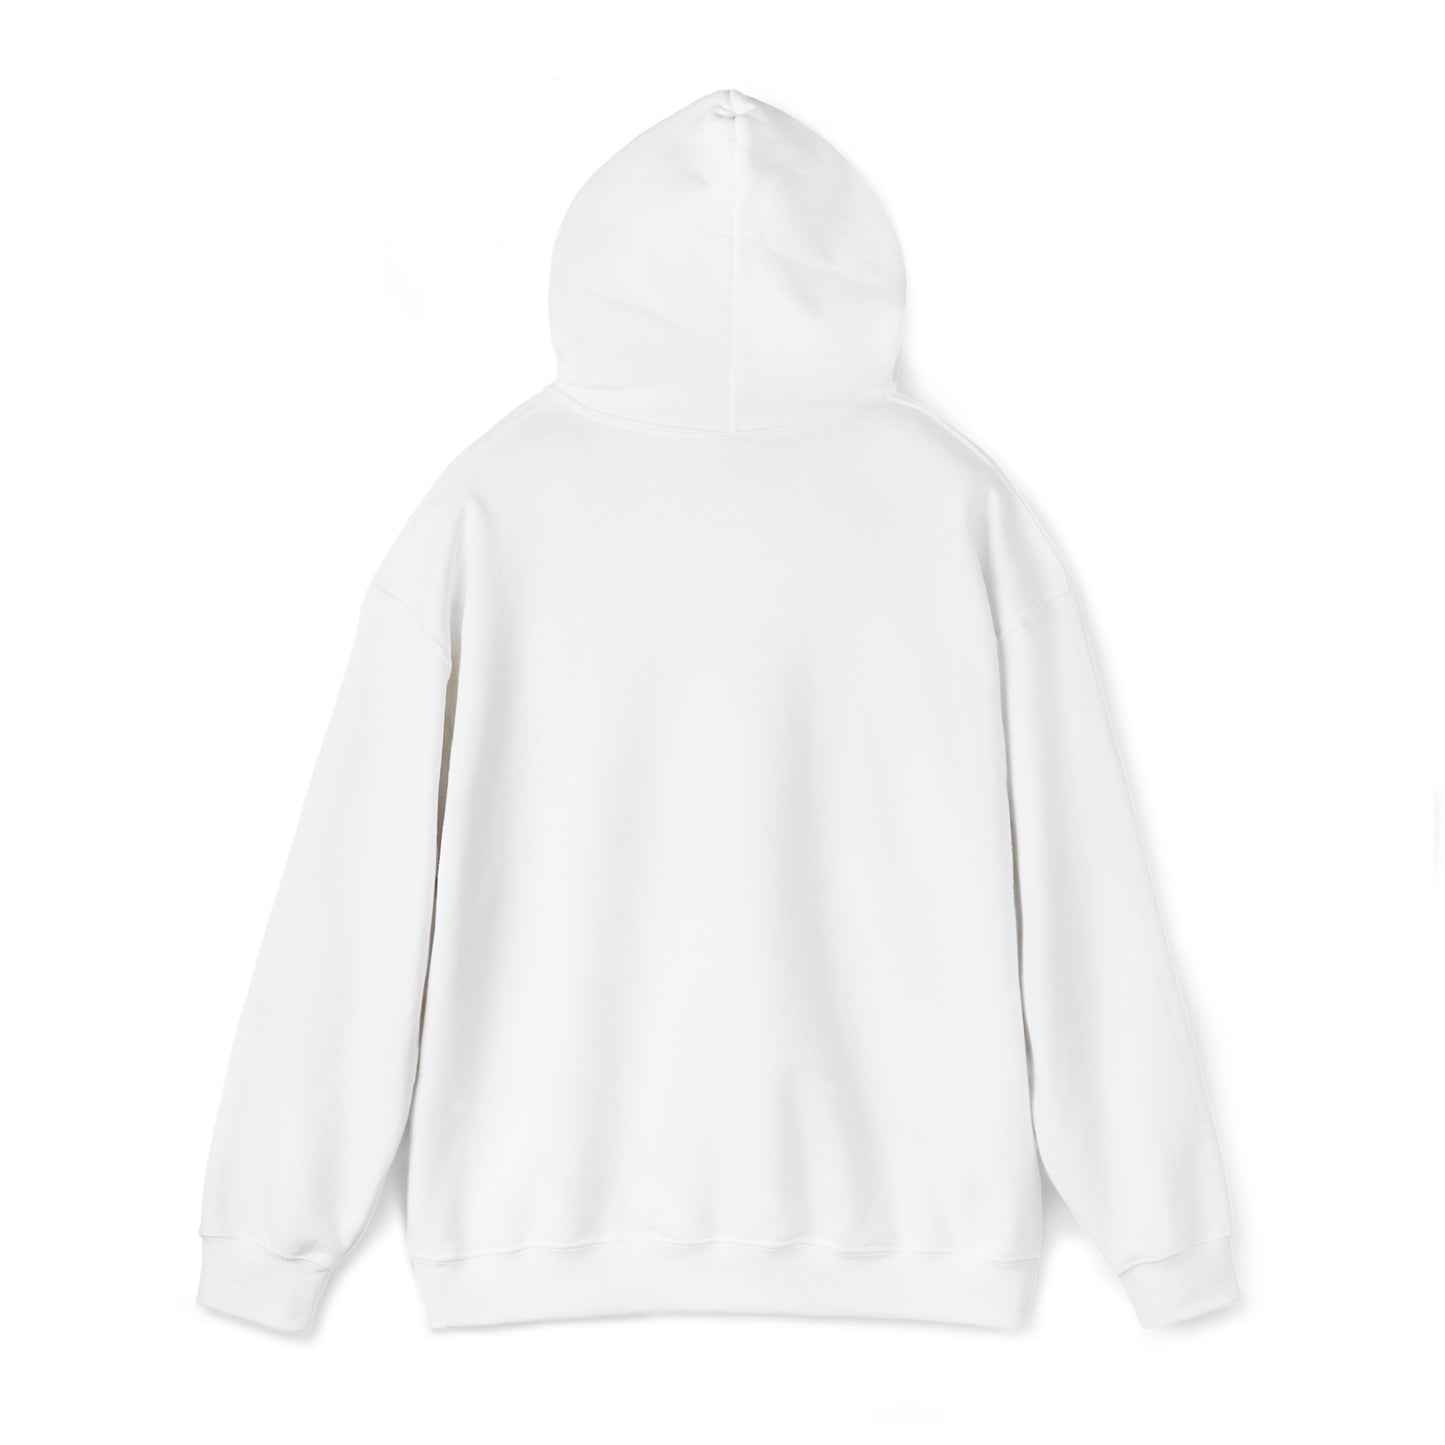 Moose Headphones | Unisex Heavy Blend™ Hooded Sweatshirt